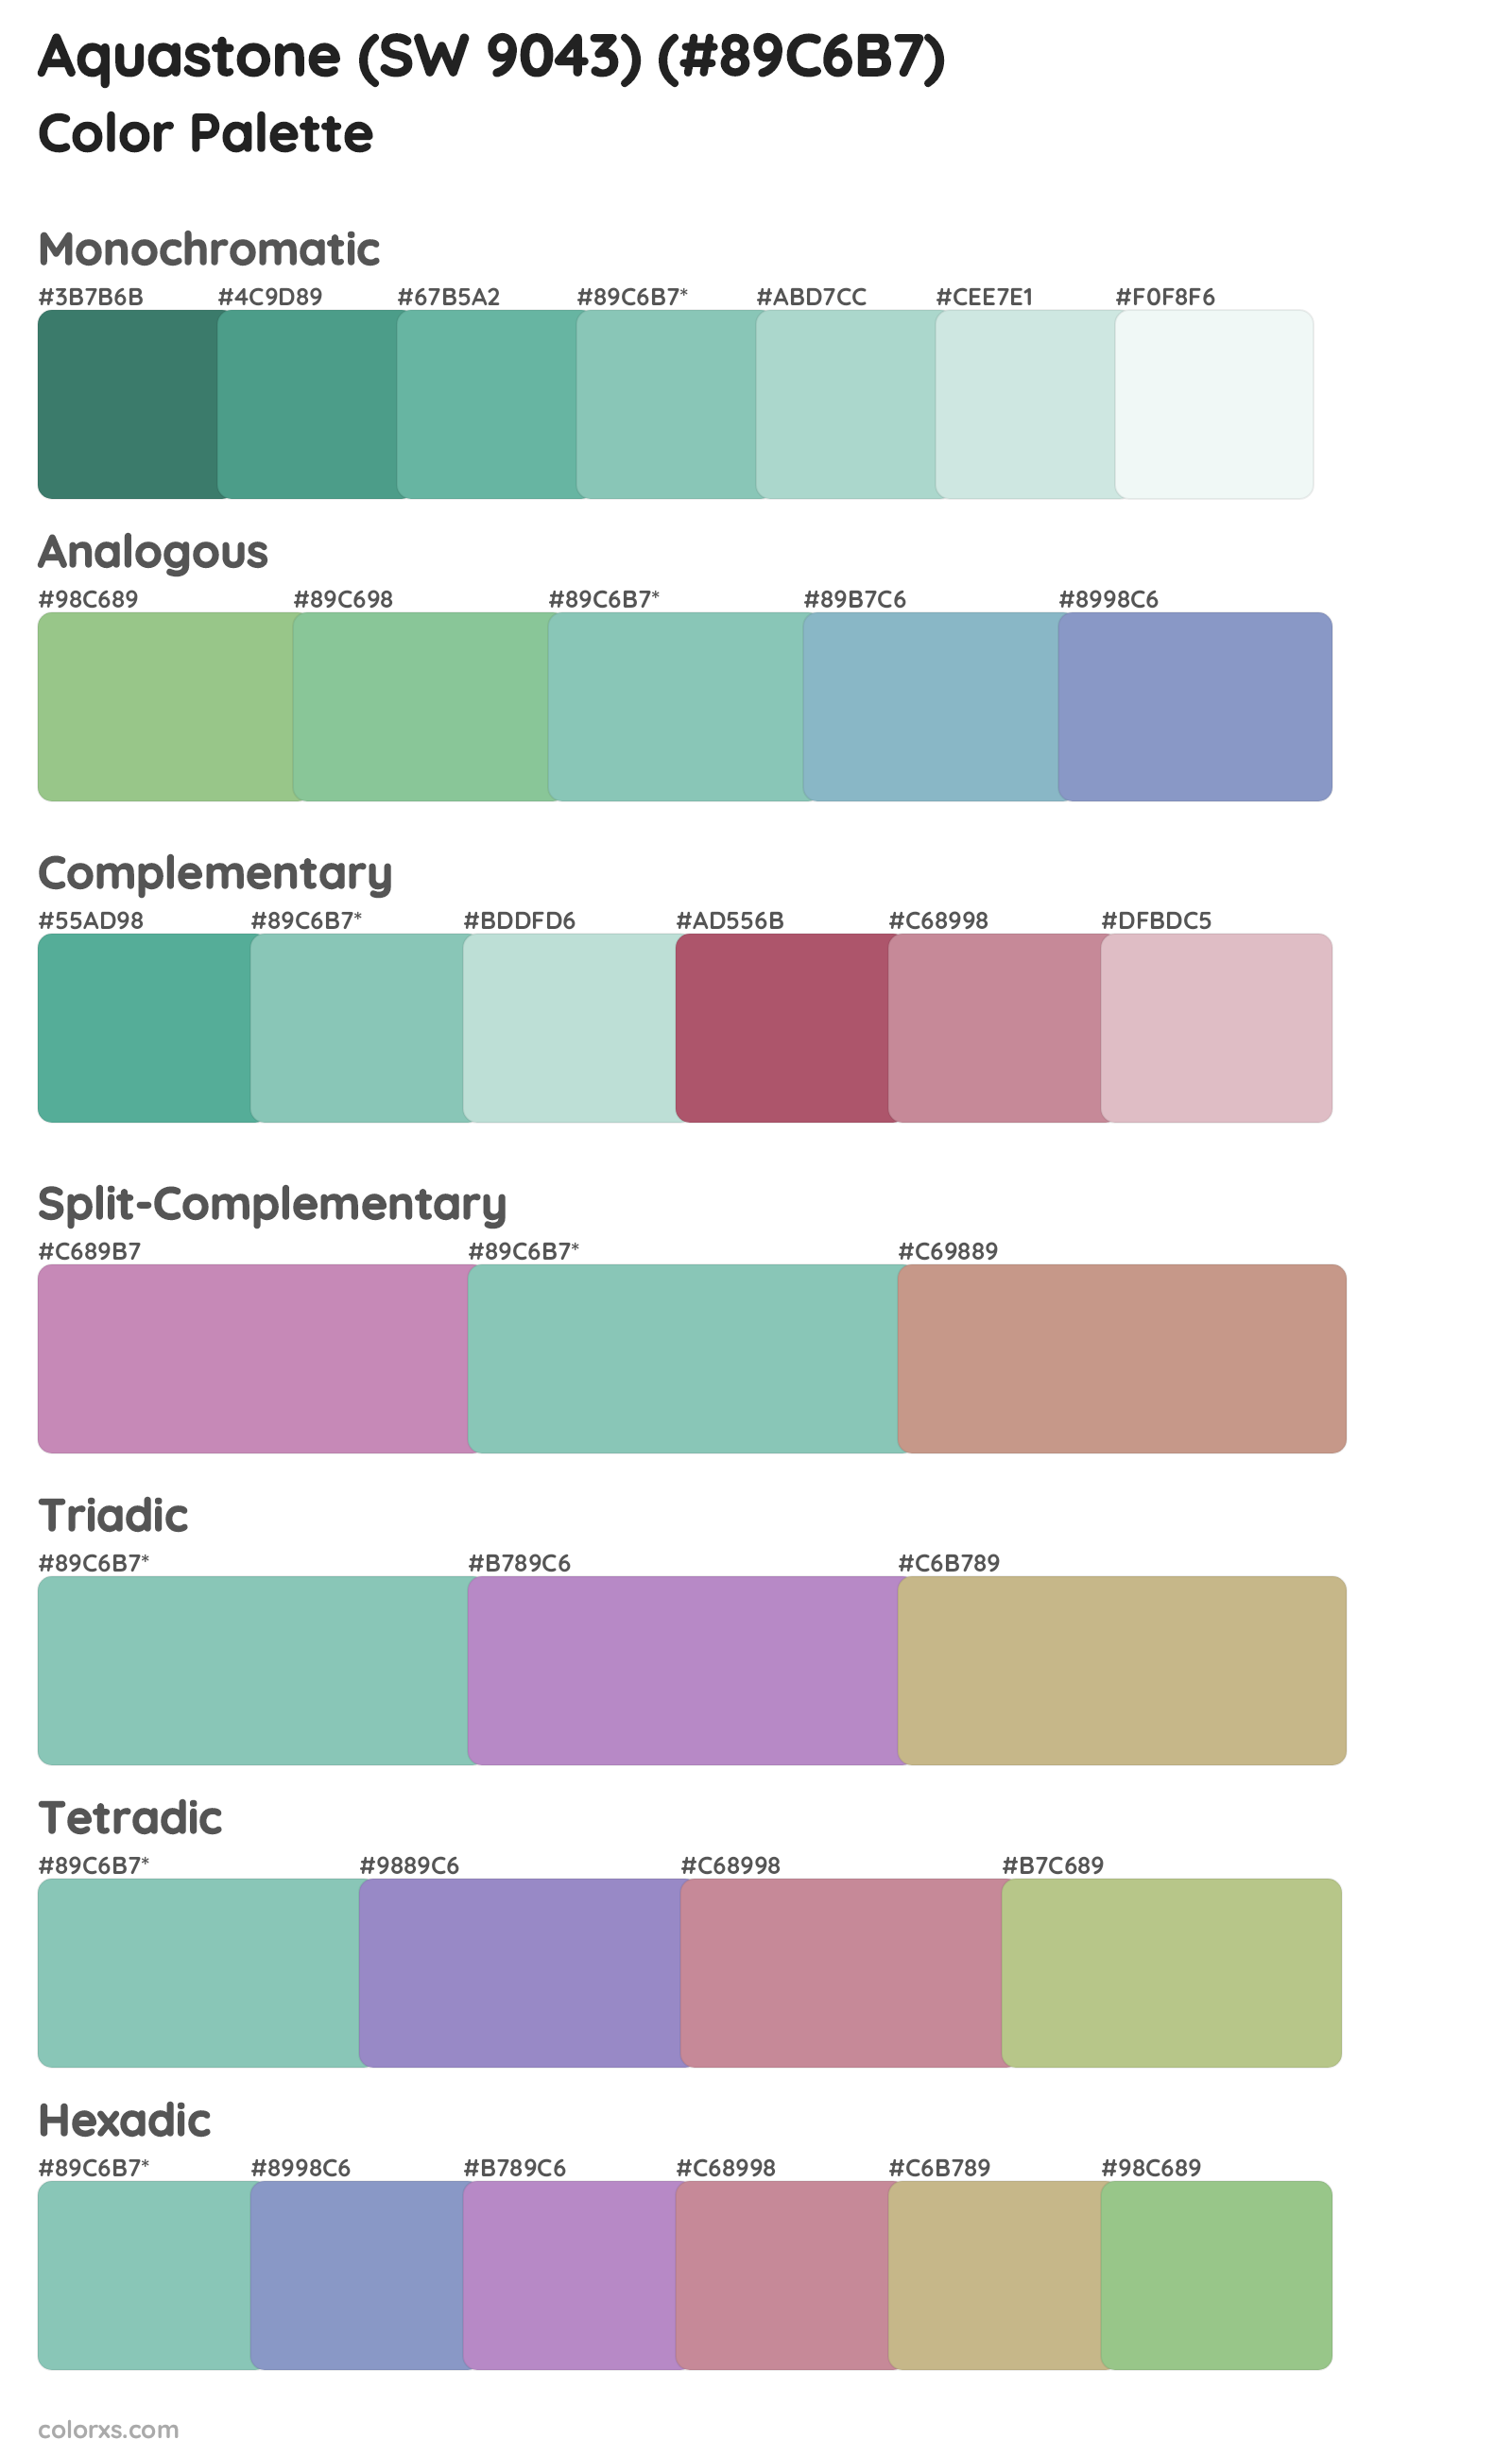 Aquastone (SW 9043) Color Scheme Palettes